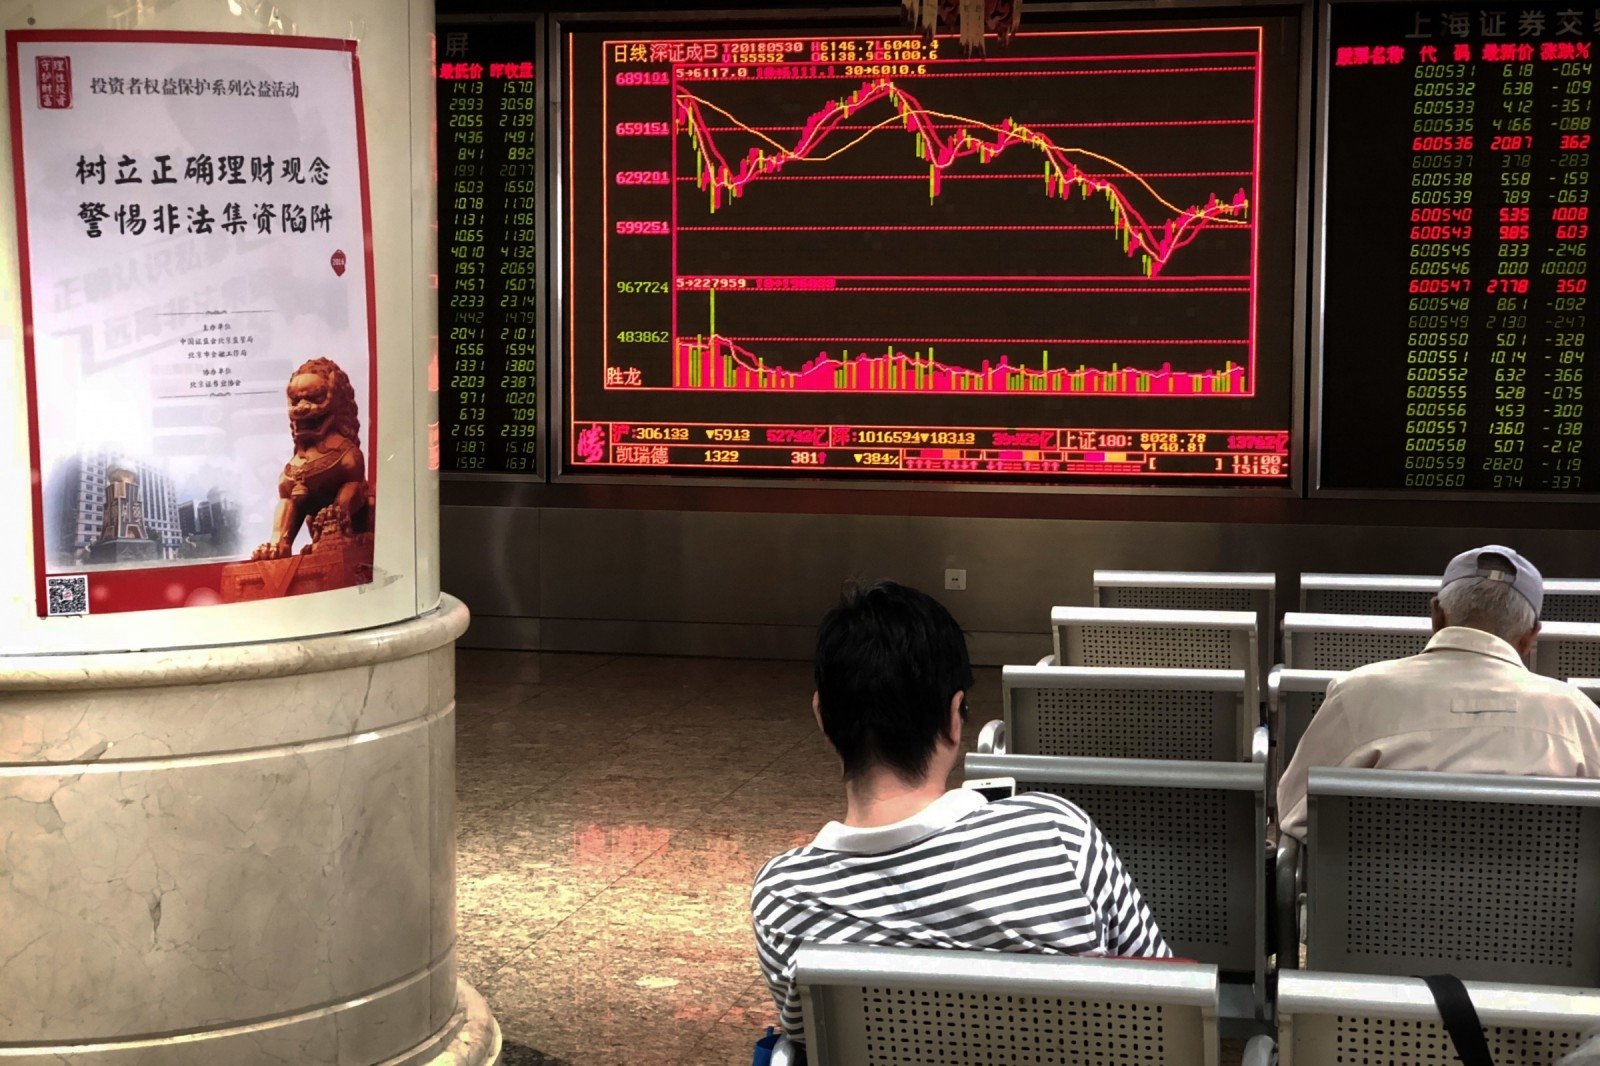 Ūkio banko ekspertai: Kinijos akcijų rinkoje atsiveria patrauklios investavimo galimybės